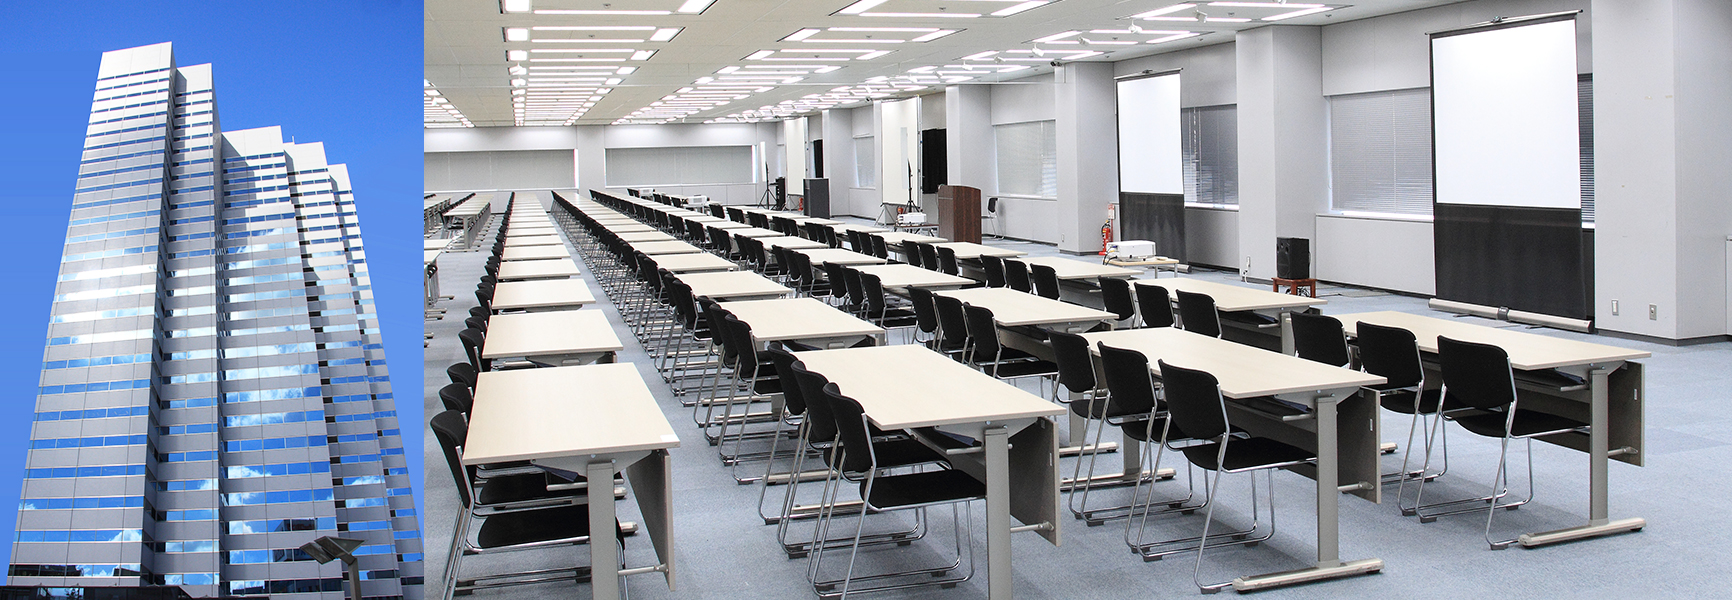 新宿エルタワーサンスカイルーム 貸会議室 セミナールーム イベントホール